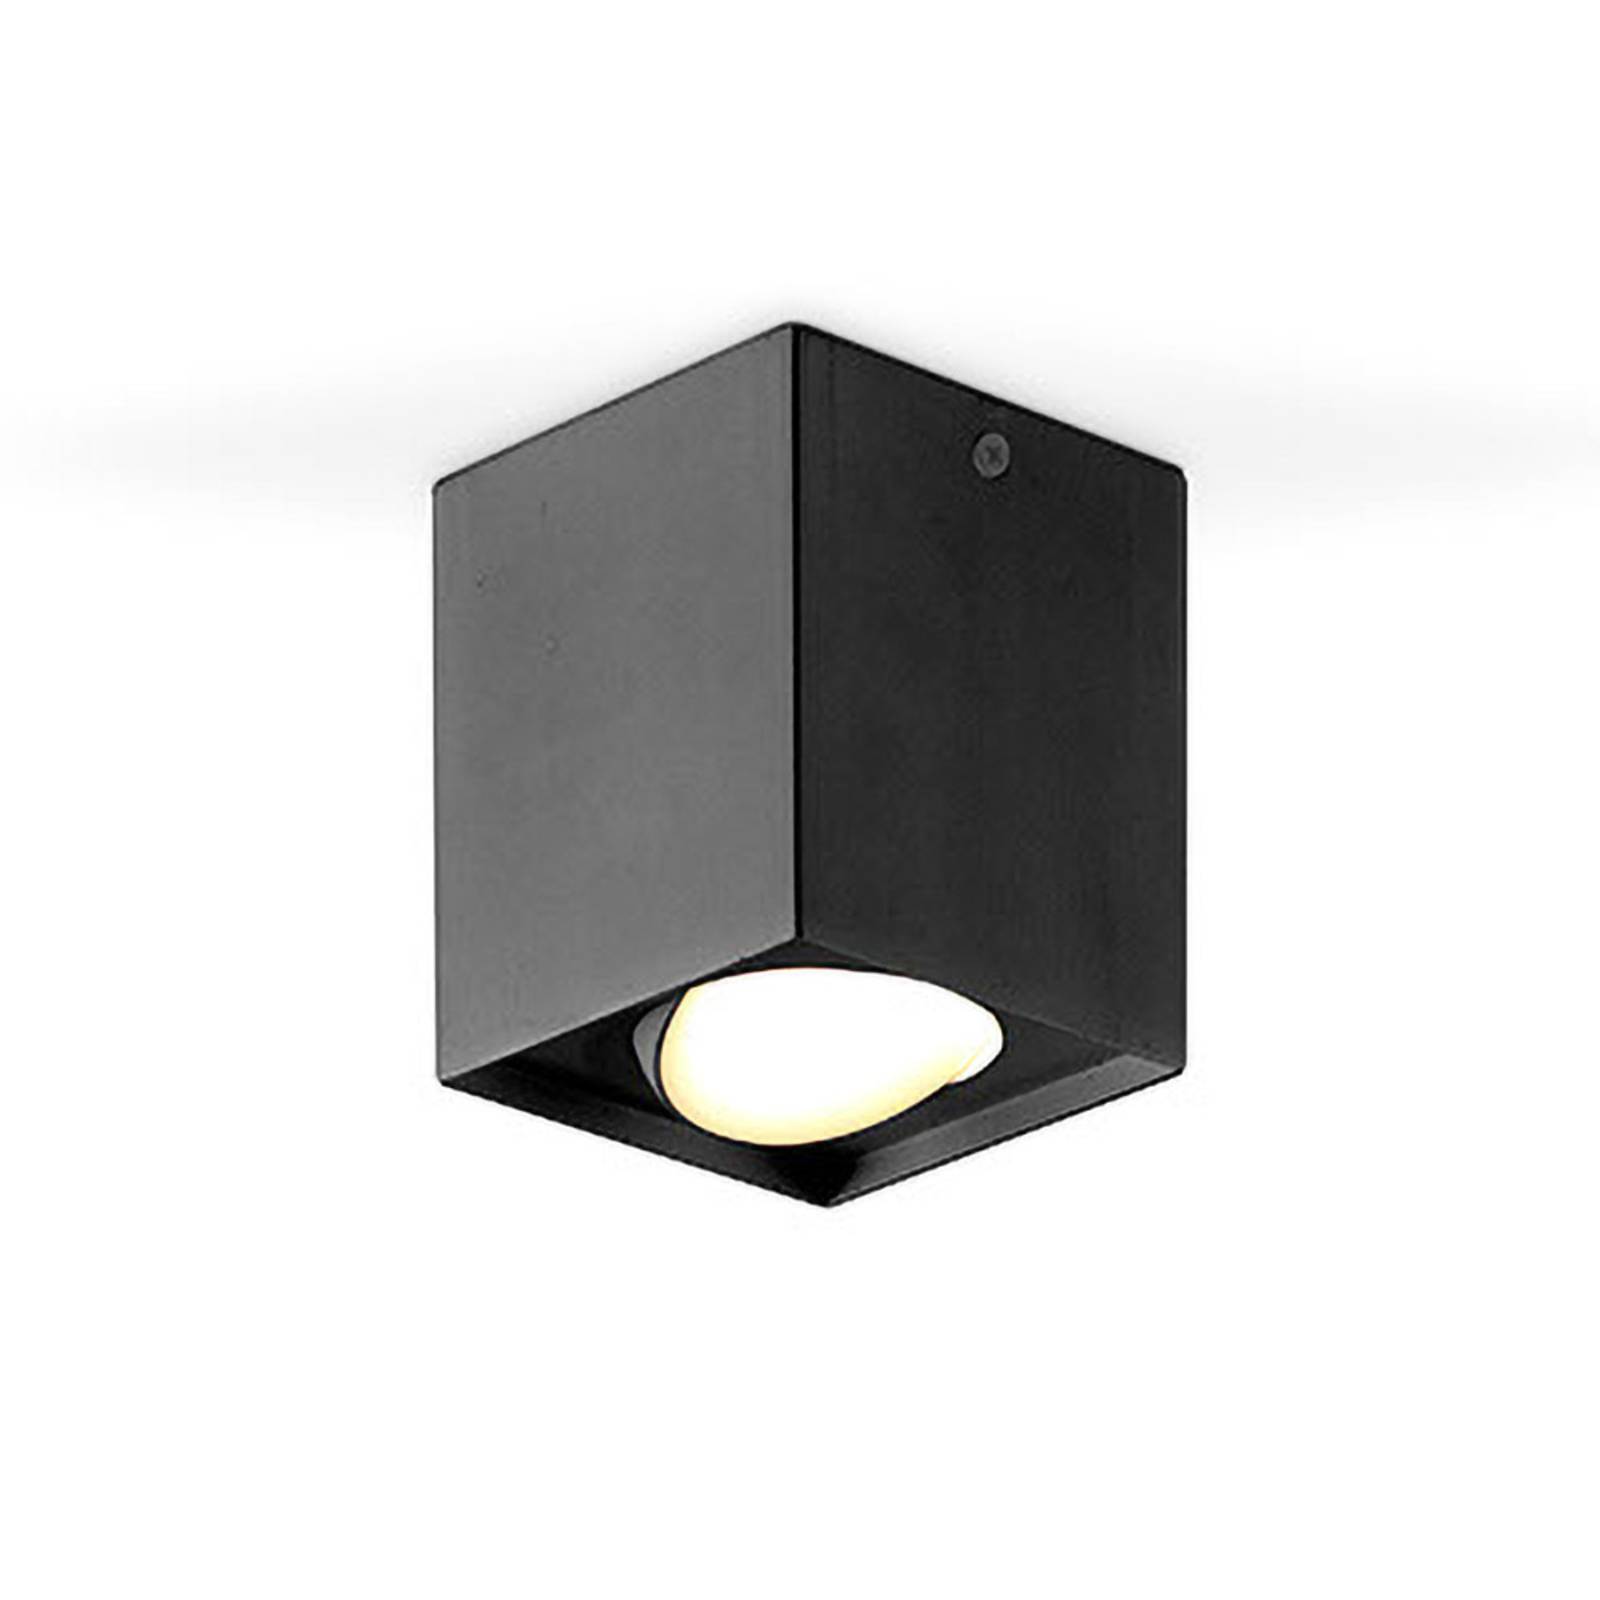 Image of EVN Kardanus plafonnier LED, 9x9 cm, noir 4037293029919